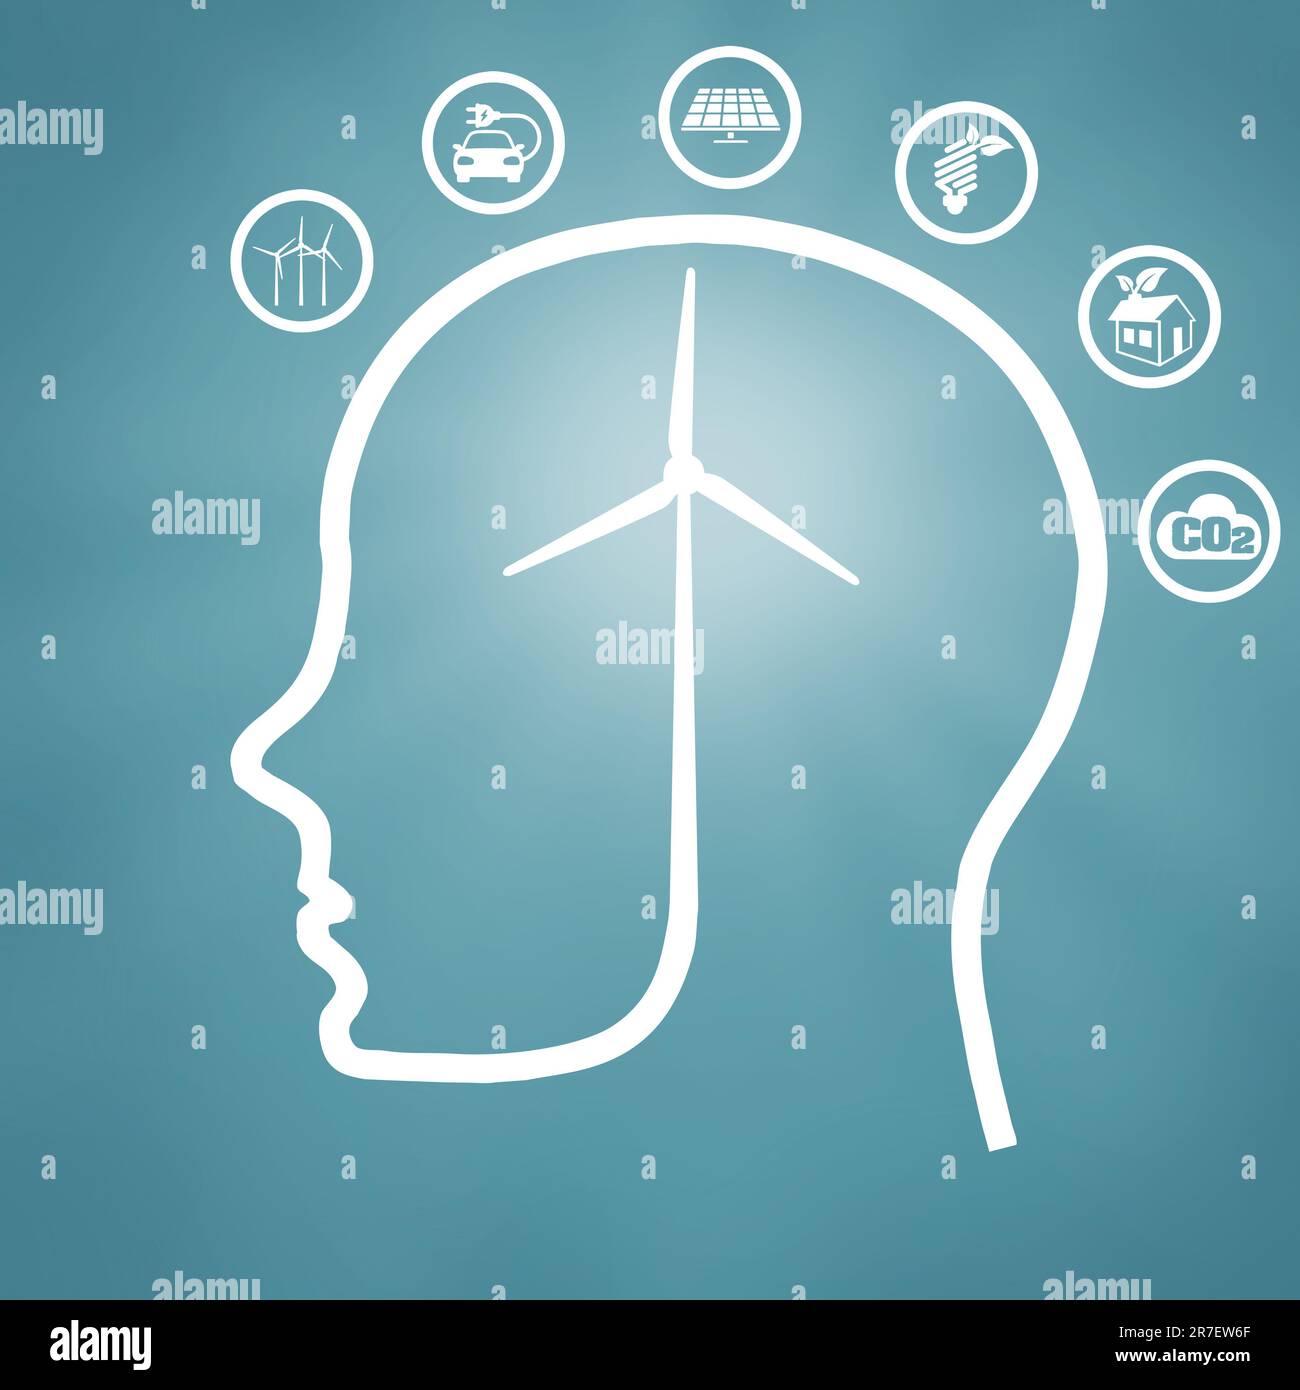 Illustration du contour de la tête humaine avec l'éolienne-cerveau entouré de pictogrammes d'énergie durable - concept de conscience environnementale Banque D'Images